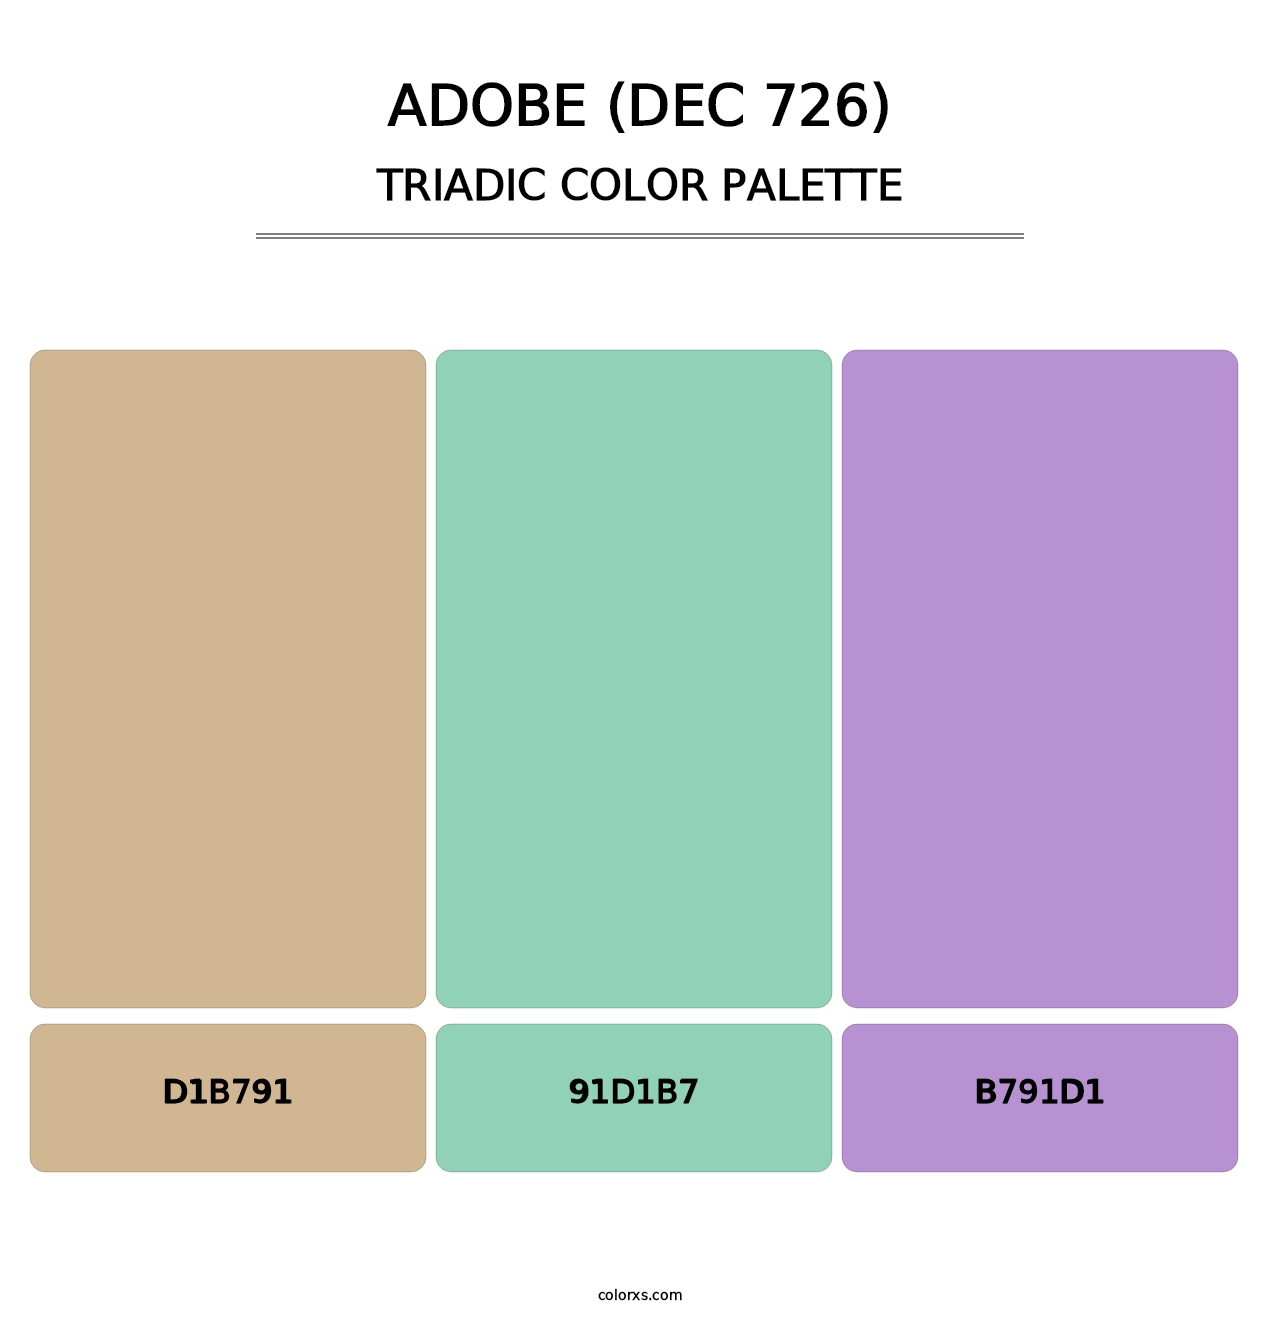 Adobe (DEC 726) - Triadic Color Palette